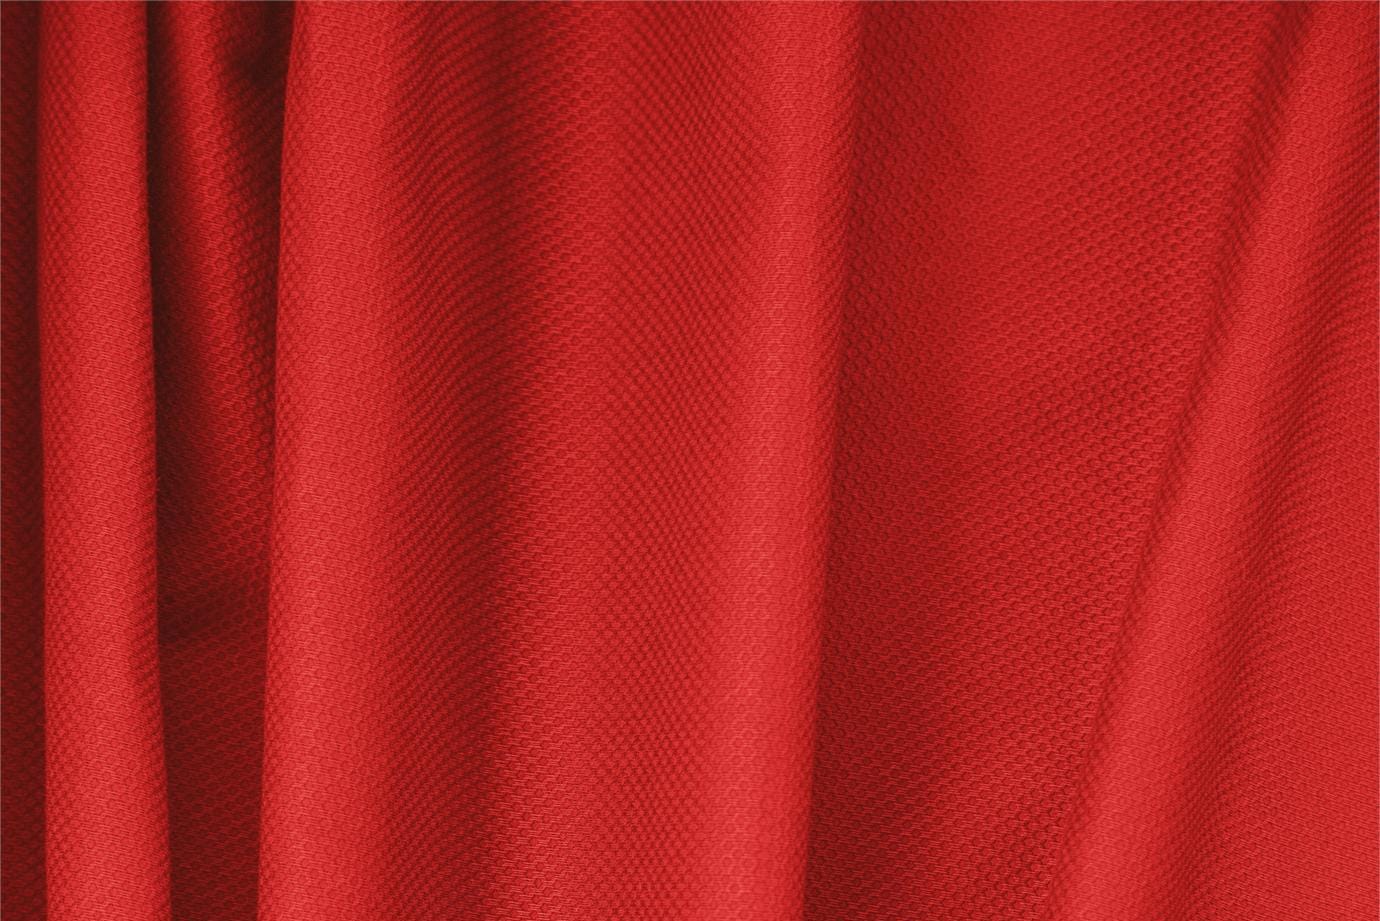 Tissu Piquet Stretch Rouge feu en Coton, Stretch pour vêtements